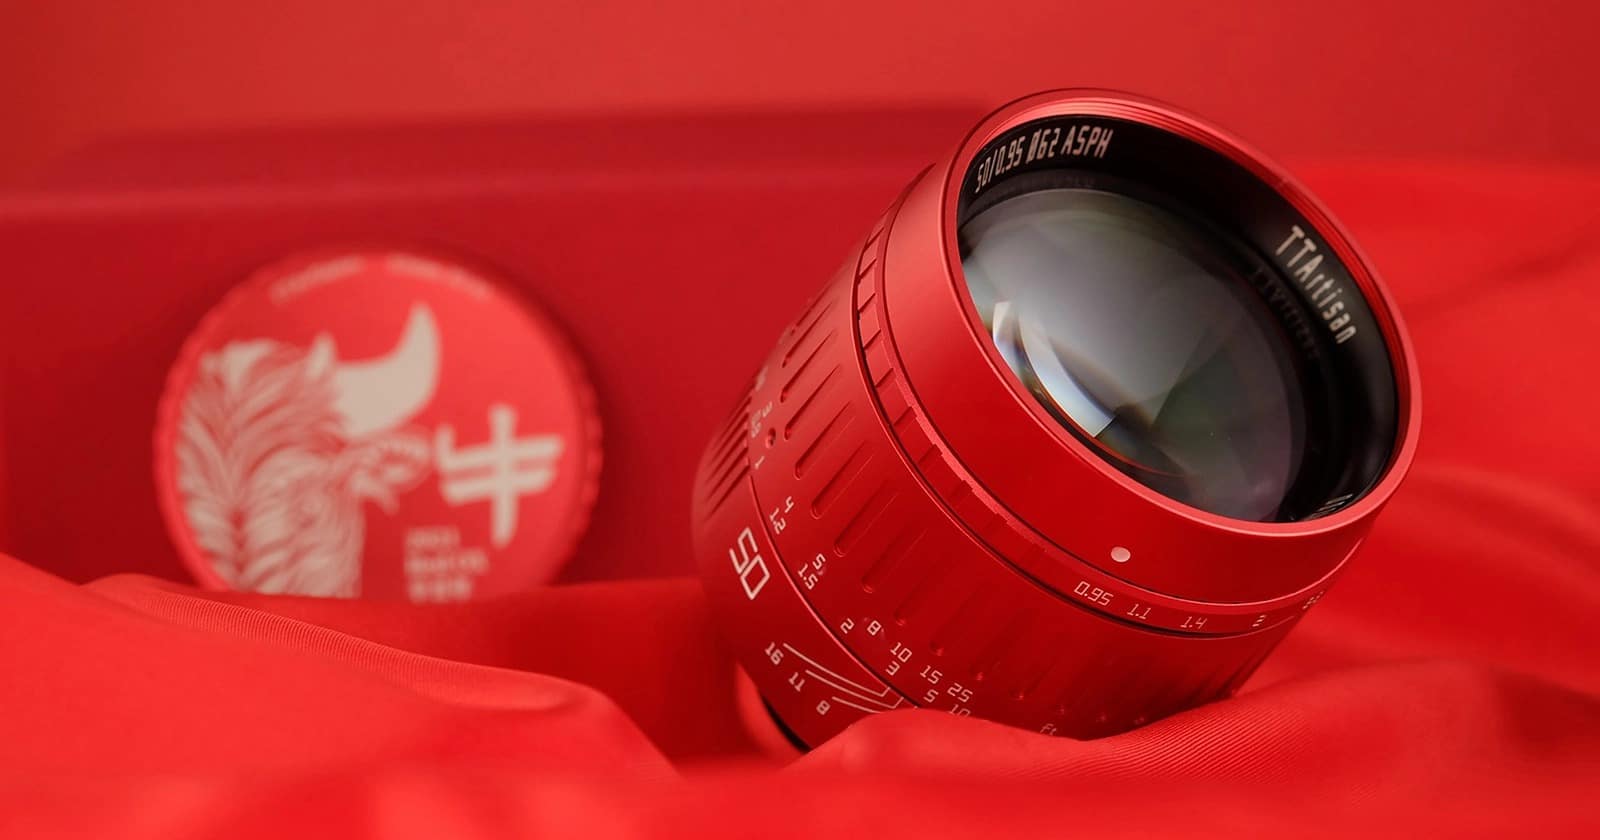 TTArtisan ra mắt ống kính 50mm F0.95 phiên bản năm con Trâu với màu đỏ đẹp mắt